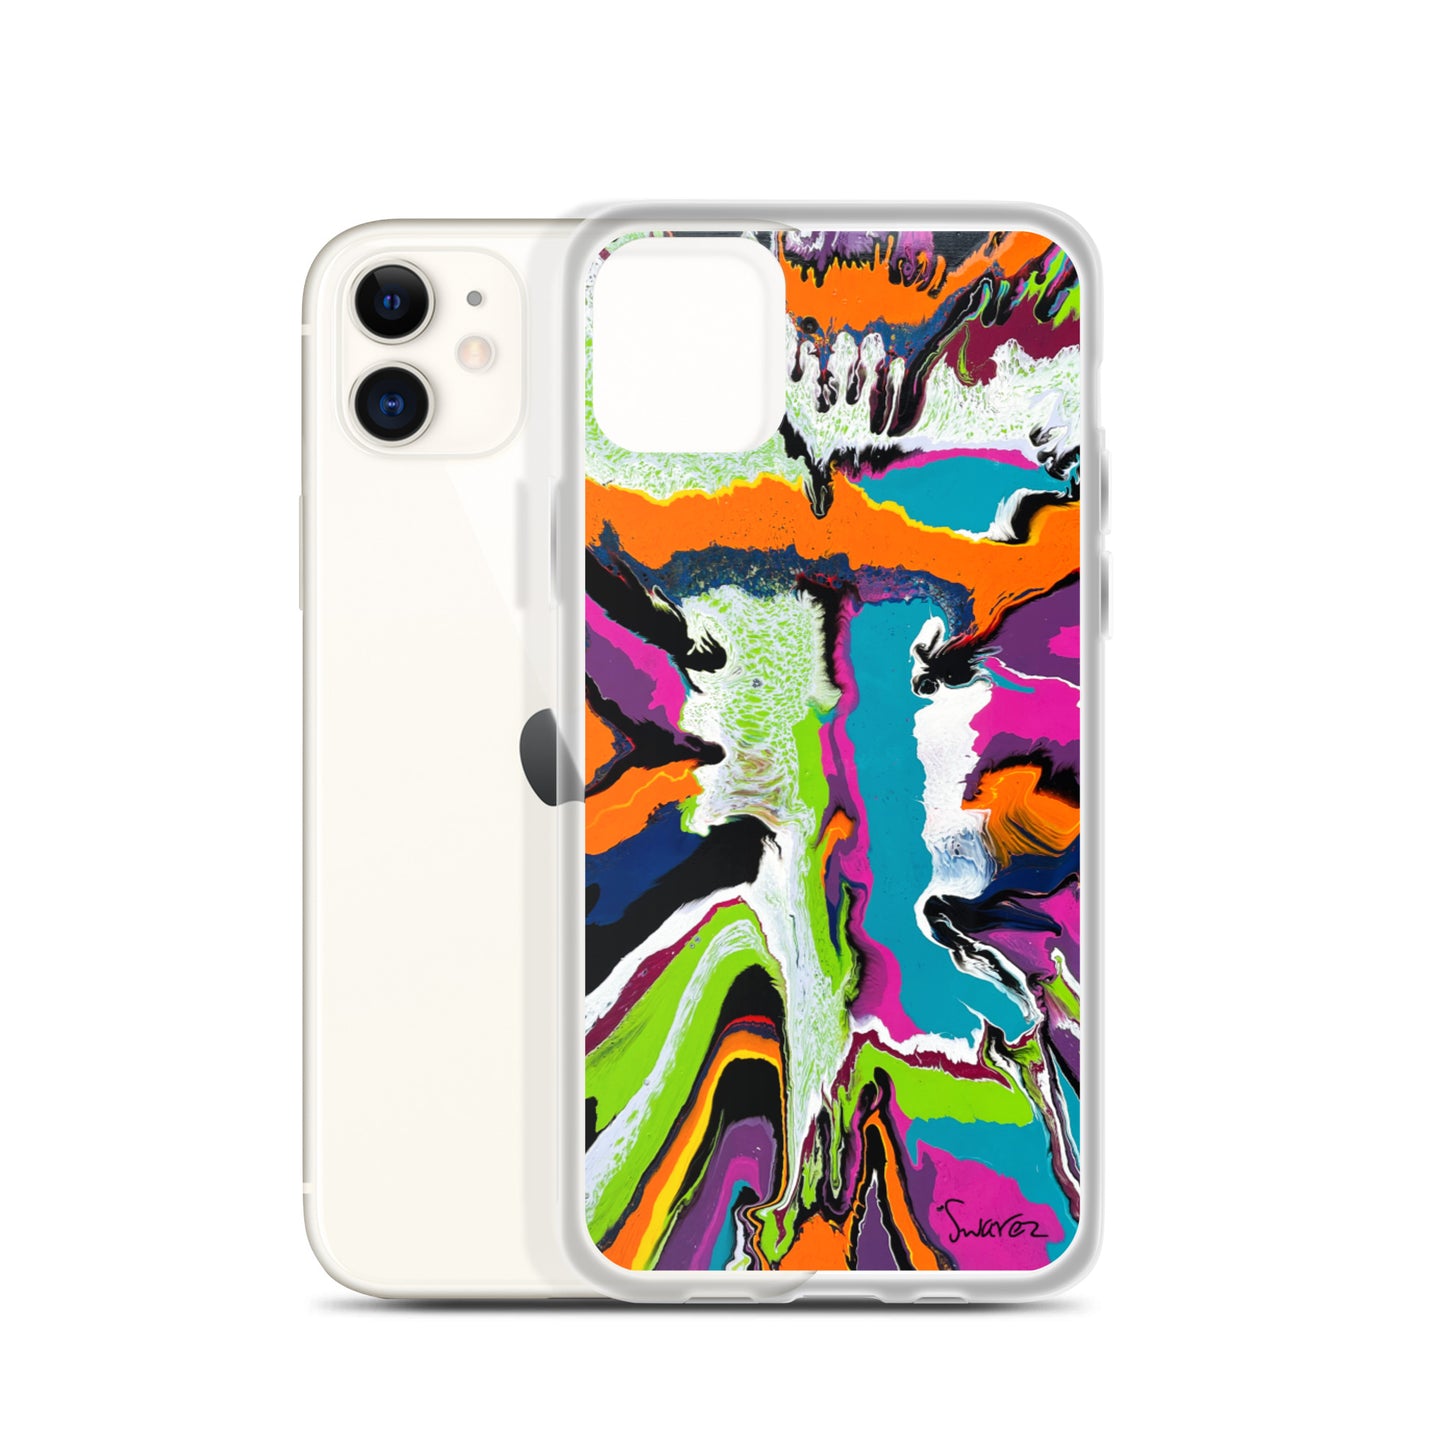 iPhone Case - Orange burst design